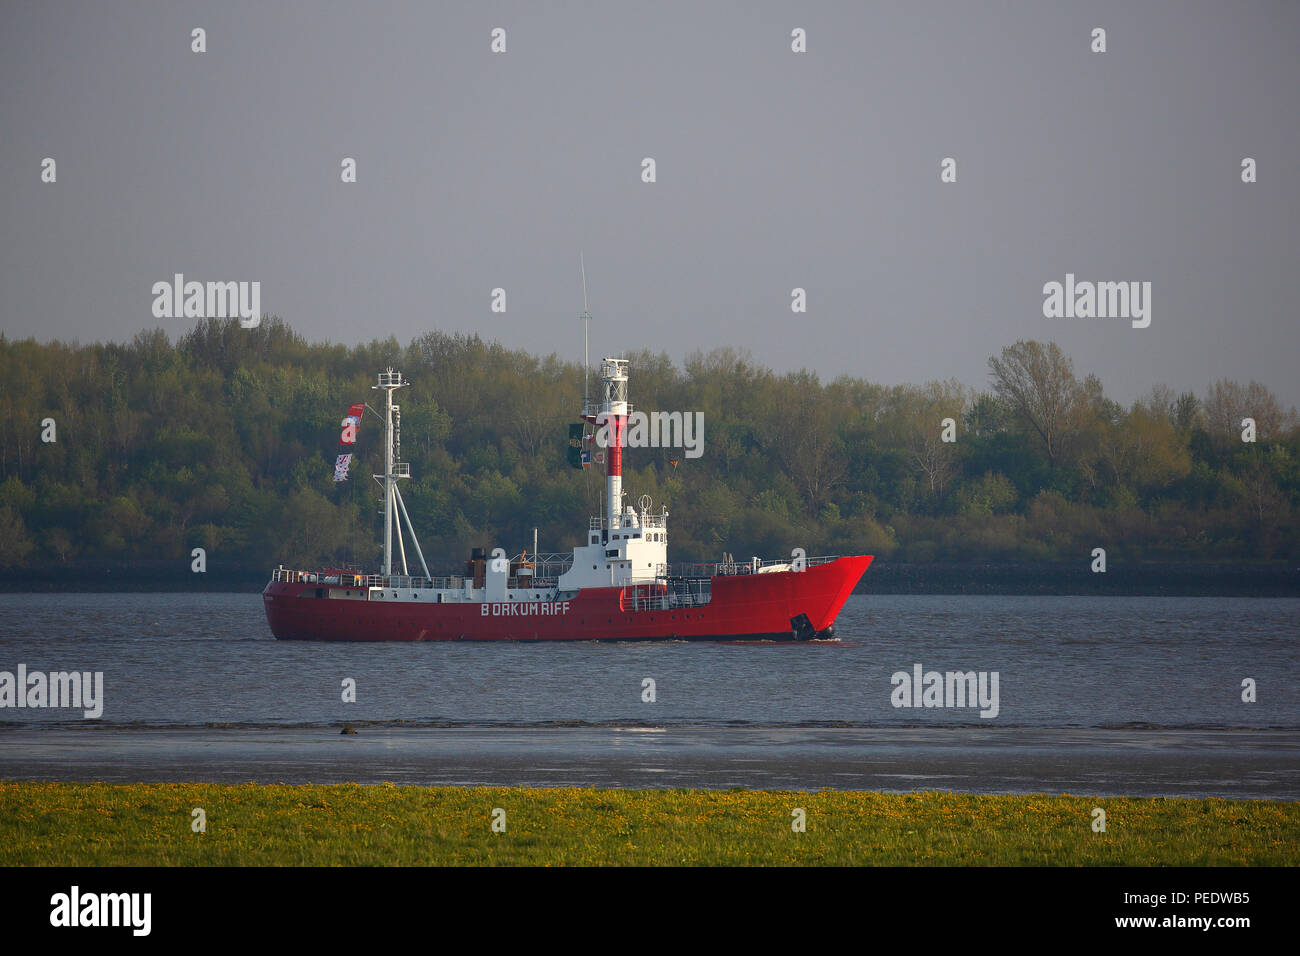 Feuerschiff Borkum Riff, auf der Elbe, Wedel, Schleswig-Holstein, Deutschland Stock Photo